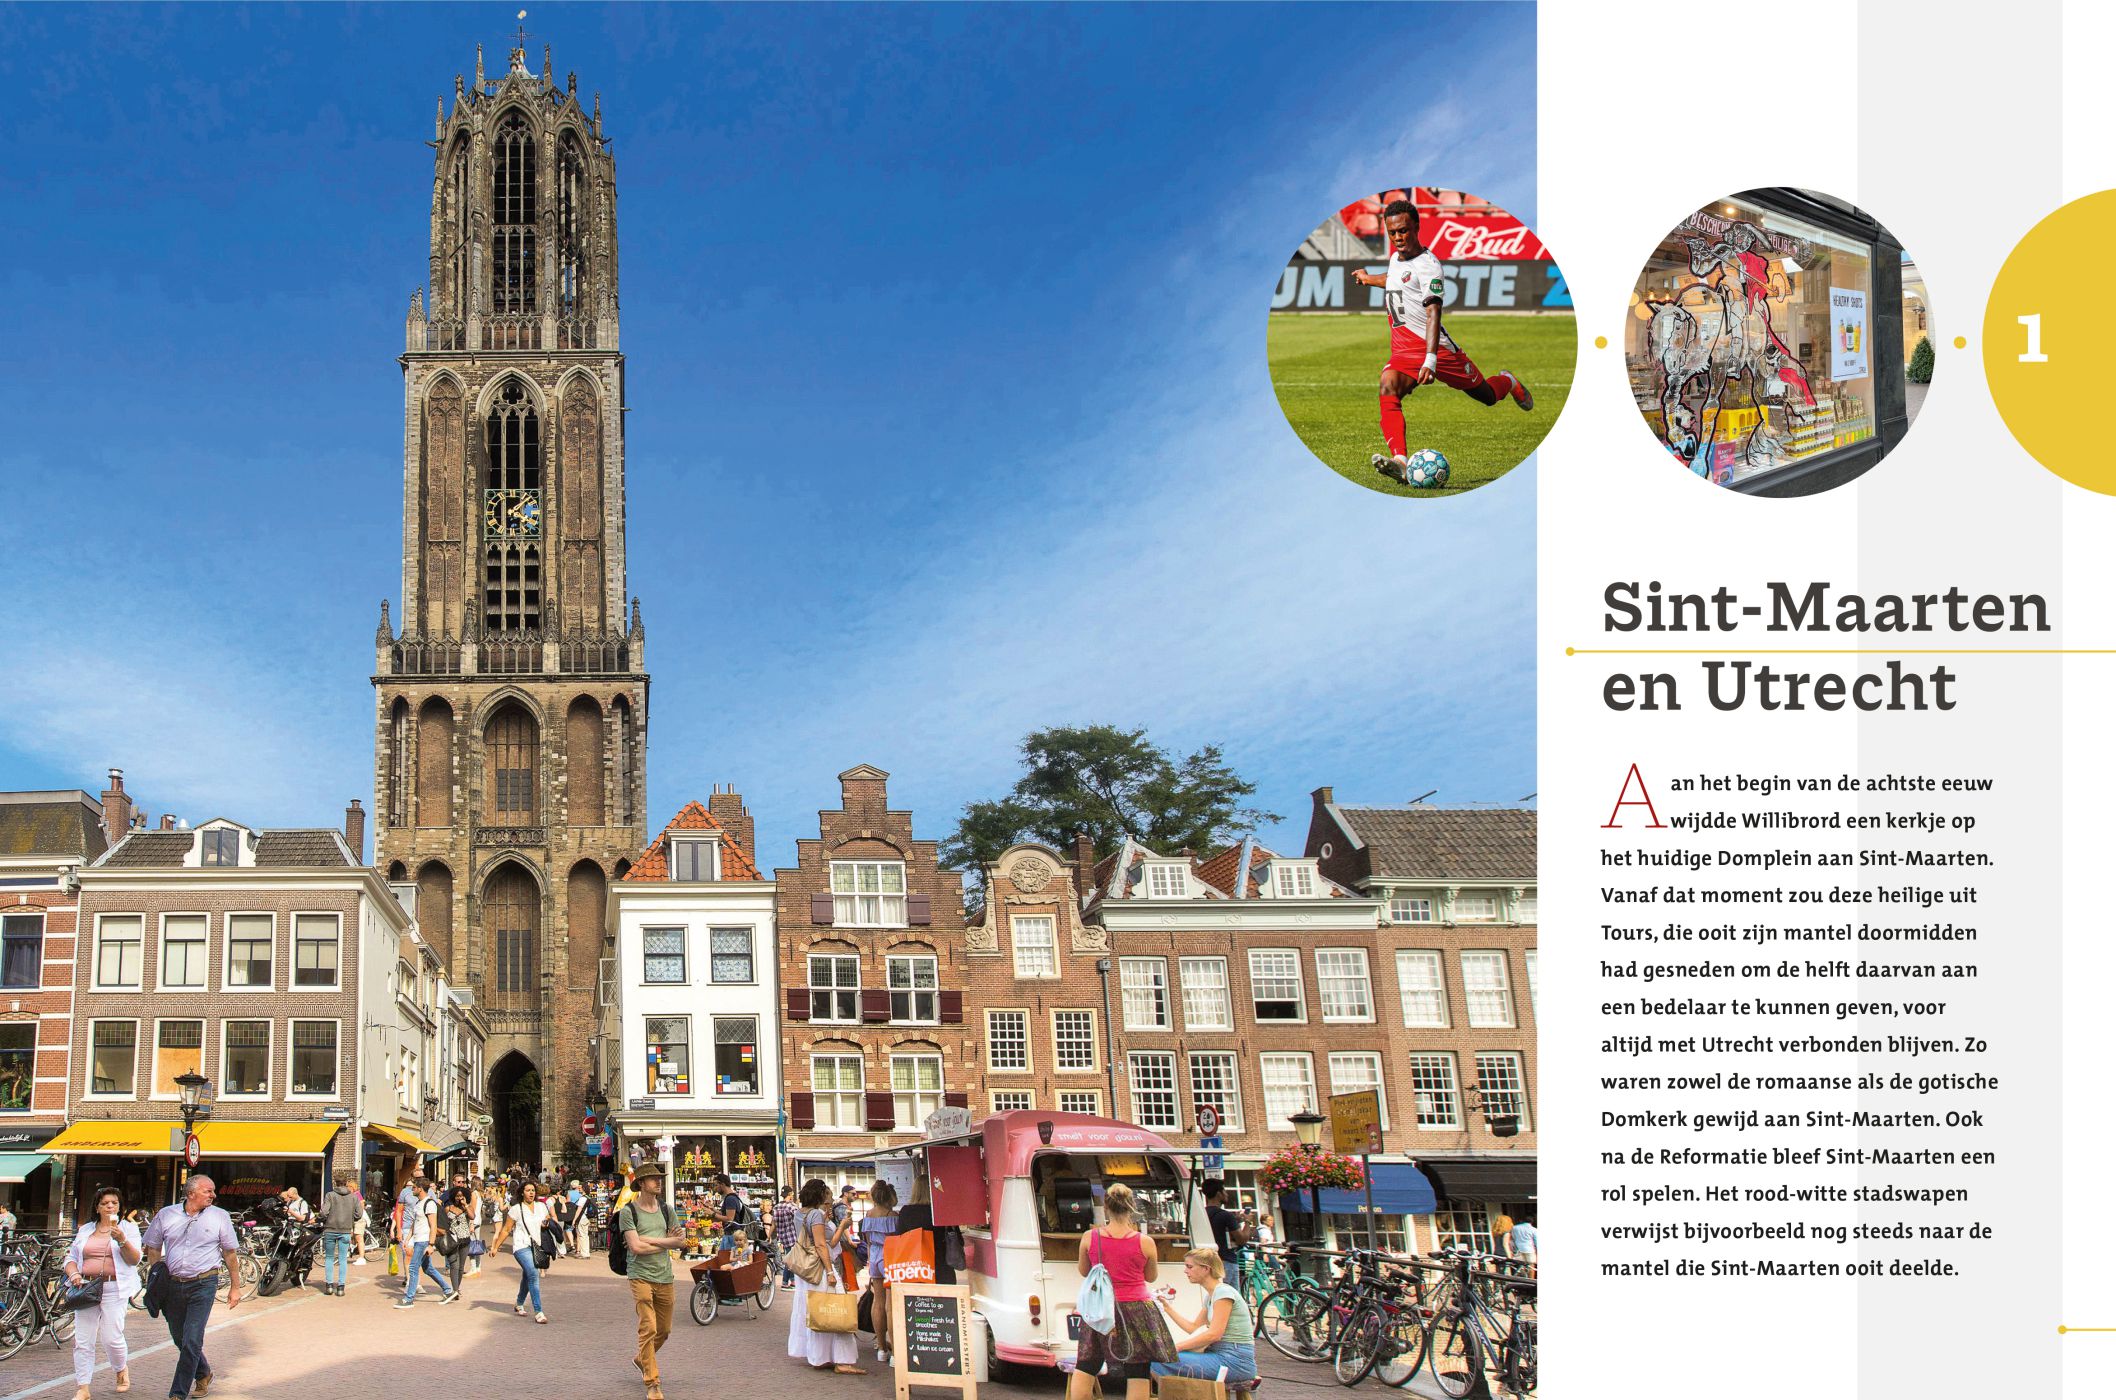 Inkijkexemplaar van het boek: <em>Sint-Maarten in Utrecht. Sporen van een beschermheilige</em> - © Uitgeverij Matrijs